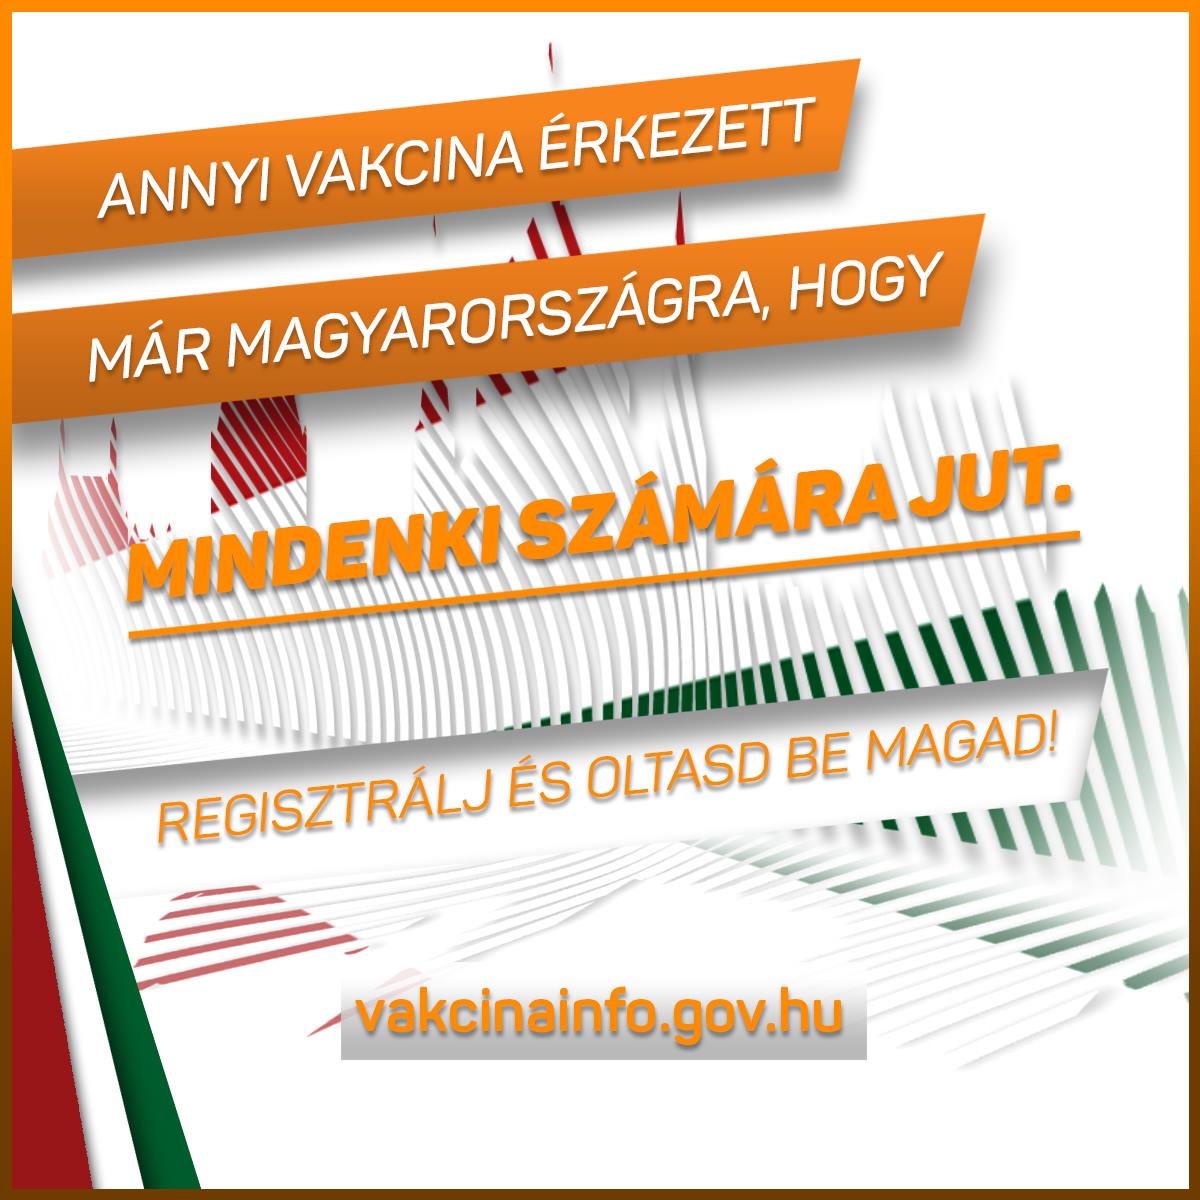 Annyi vakcina érkezett már Magyarországra, hogy mindenki számára jut. Regisztrálj és oltasd be magad!